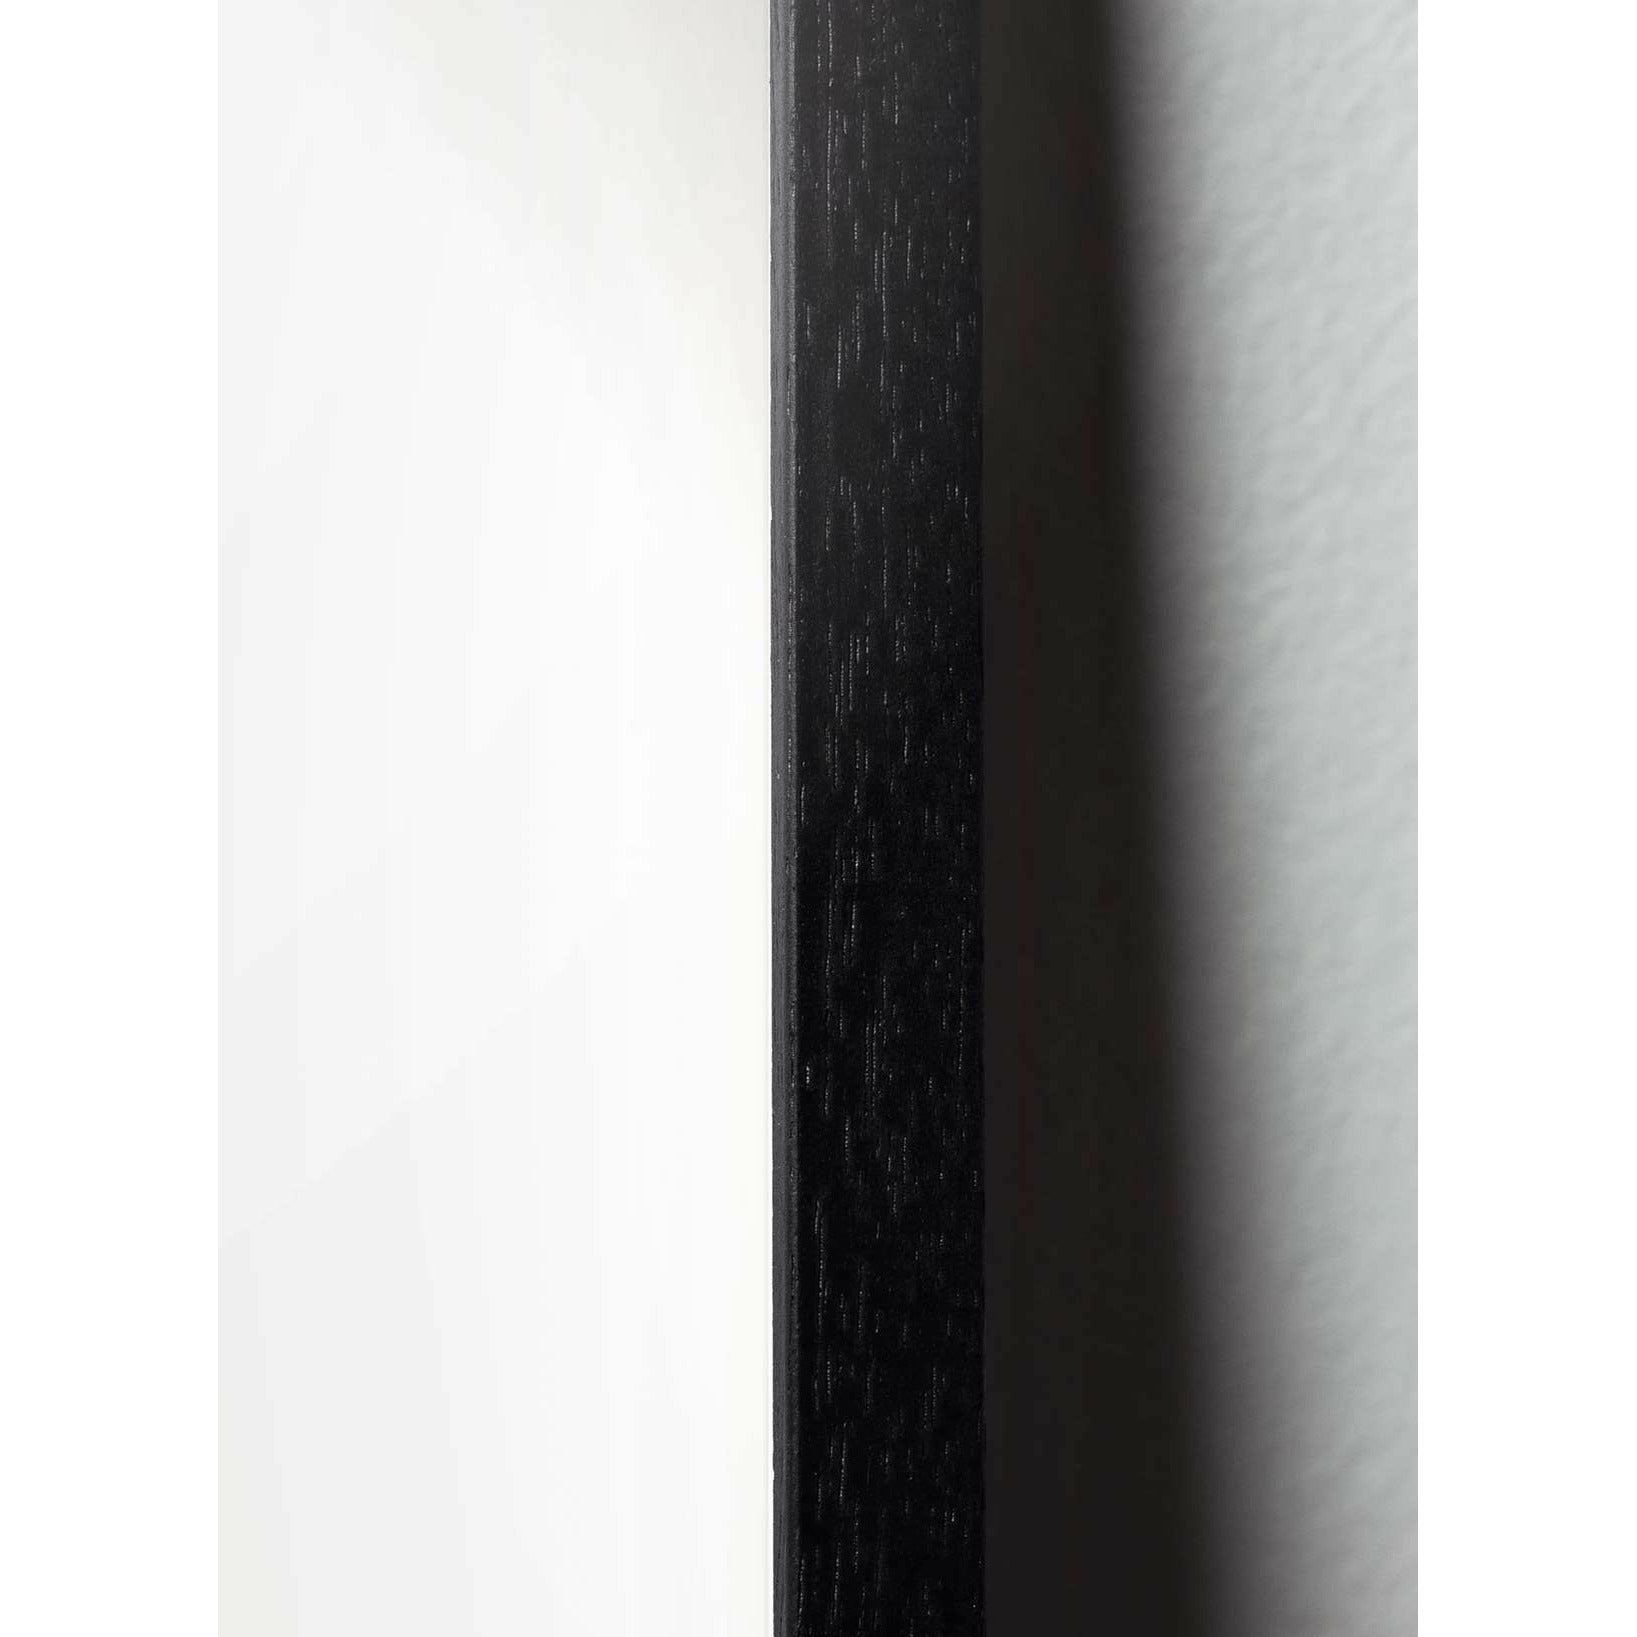 Brainchild Affiche d'icône de conception de chute, cadre en bois laqué noir 50 x70 cm, gris